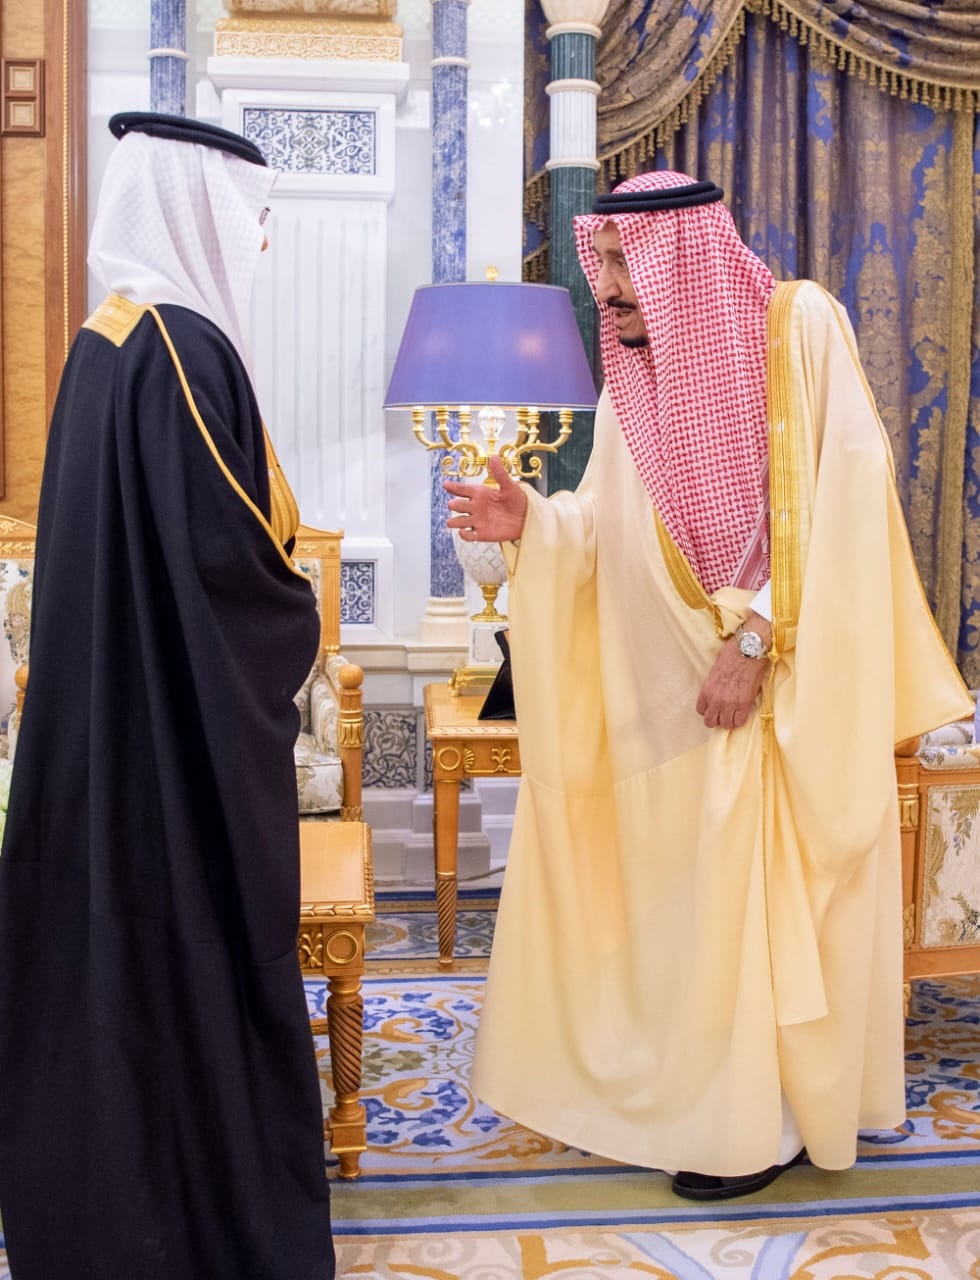 'சவூதி மன்னர் மரணிக்கவில்லை'- வதந்திக்கு முற்றுப்புள்ளி  சவூதி மன்னர் உடல்நிலை  மன்னர் உடல் நிலை குறித்து வதந்தி  சவூதி அரேபியா, வதந்தி, மன்னர் சல்மான், பட்டத்து இளவரசவர்  Game of Thrones in Saudi Arabia: State media releases photos of King Salman after rumours of death, coup  Saudi Arabia King Salman  King Salman rumours of death